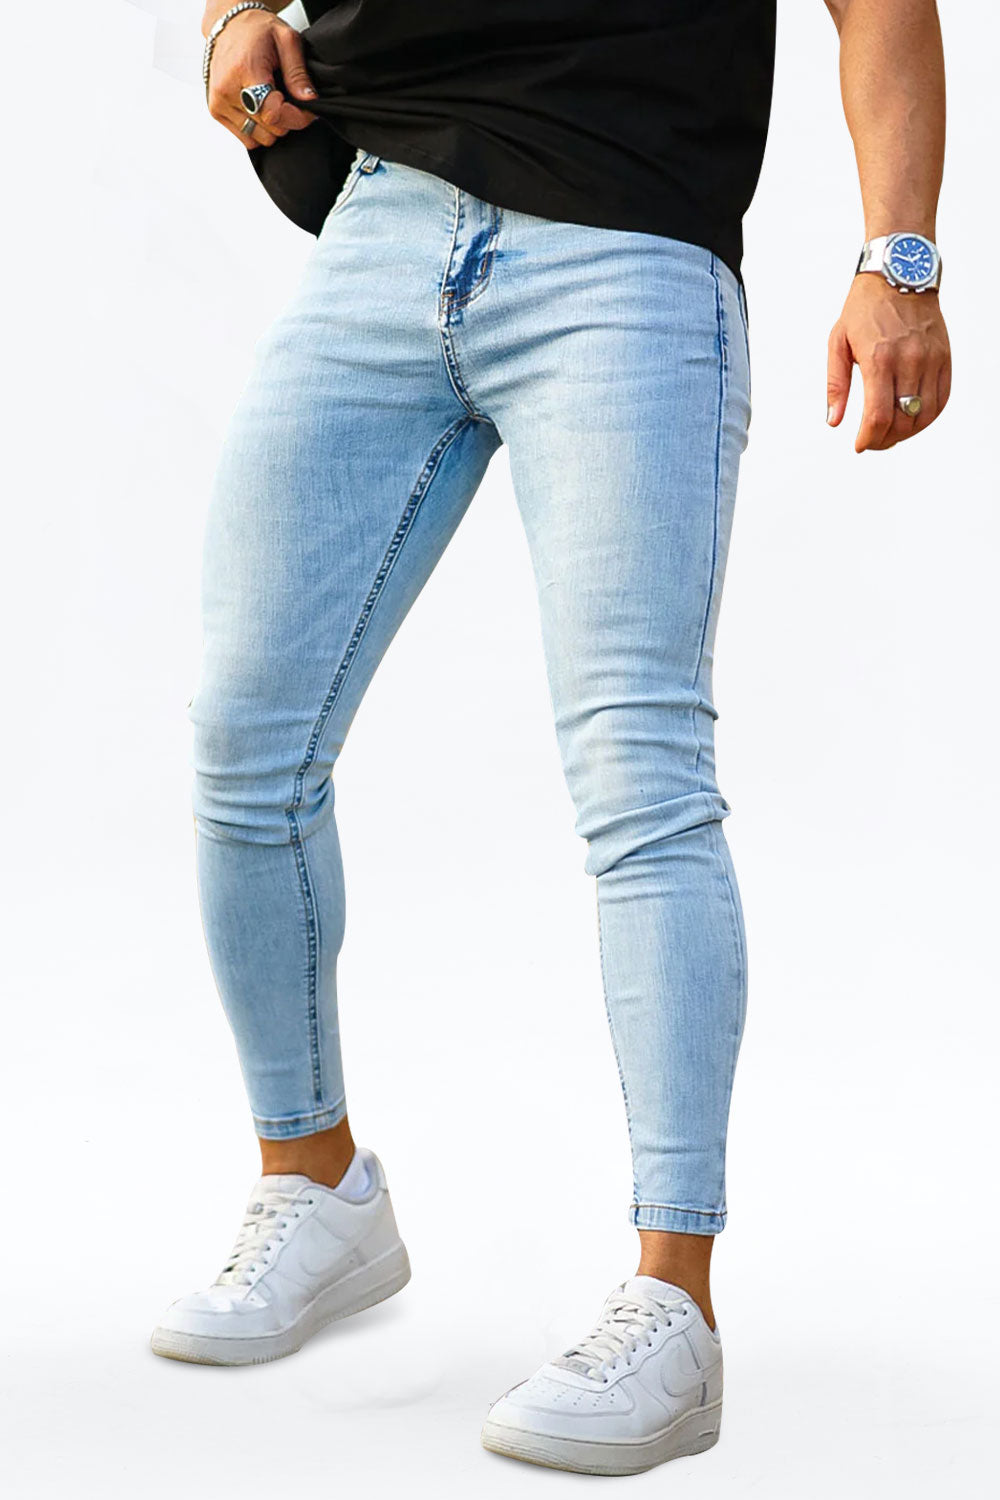 Manfinity Homme Jeans Ajustados Para Homens Em Cor Sólida